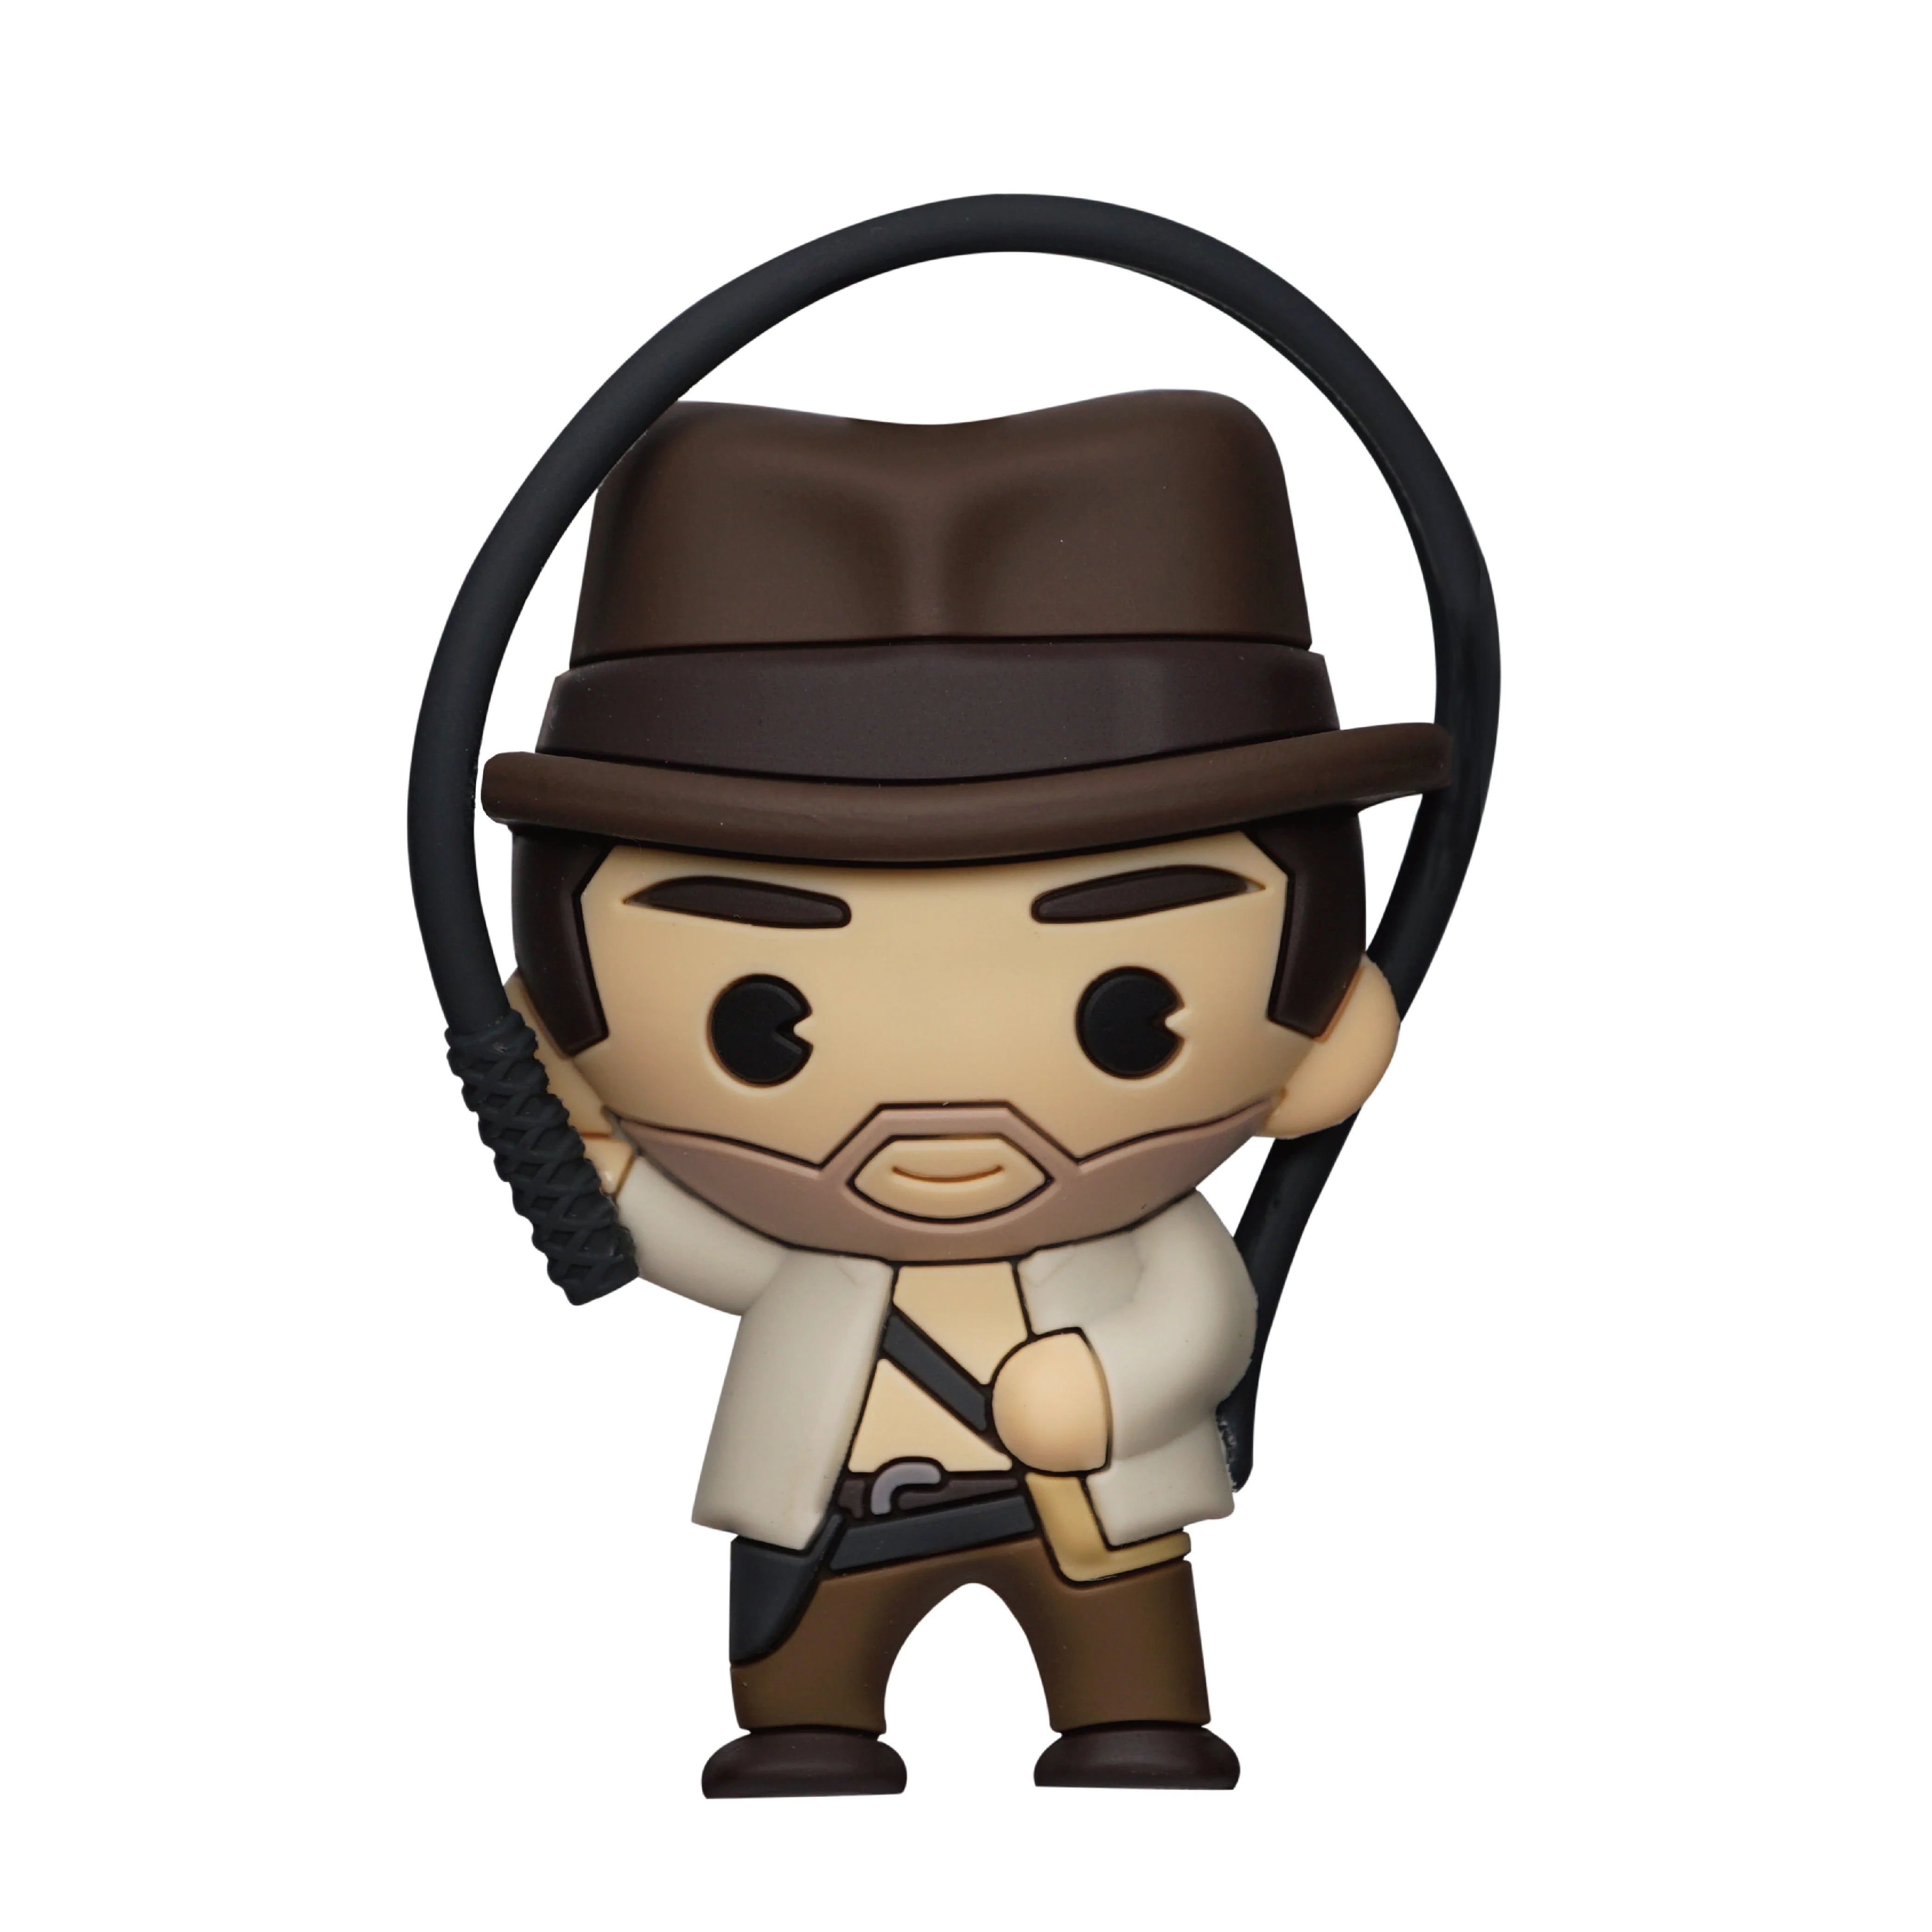 Monogram Iman 3D: Indiana Jones - Indiana Jones